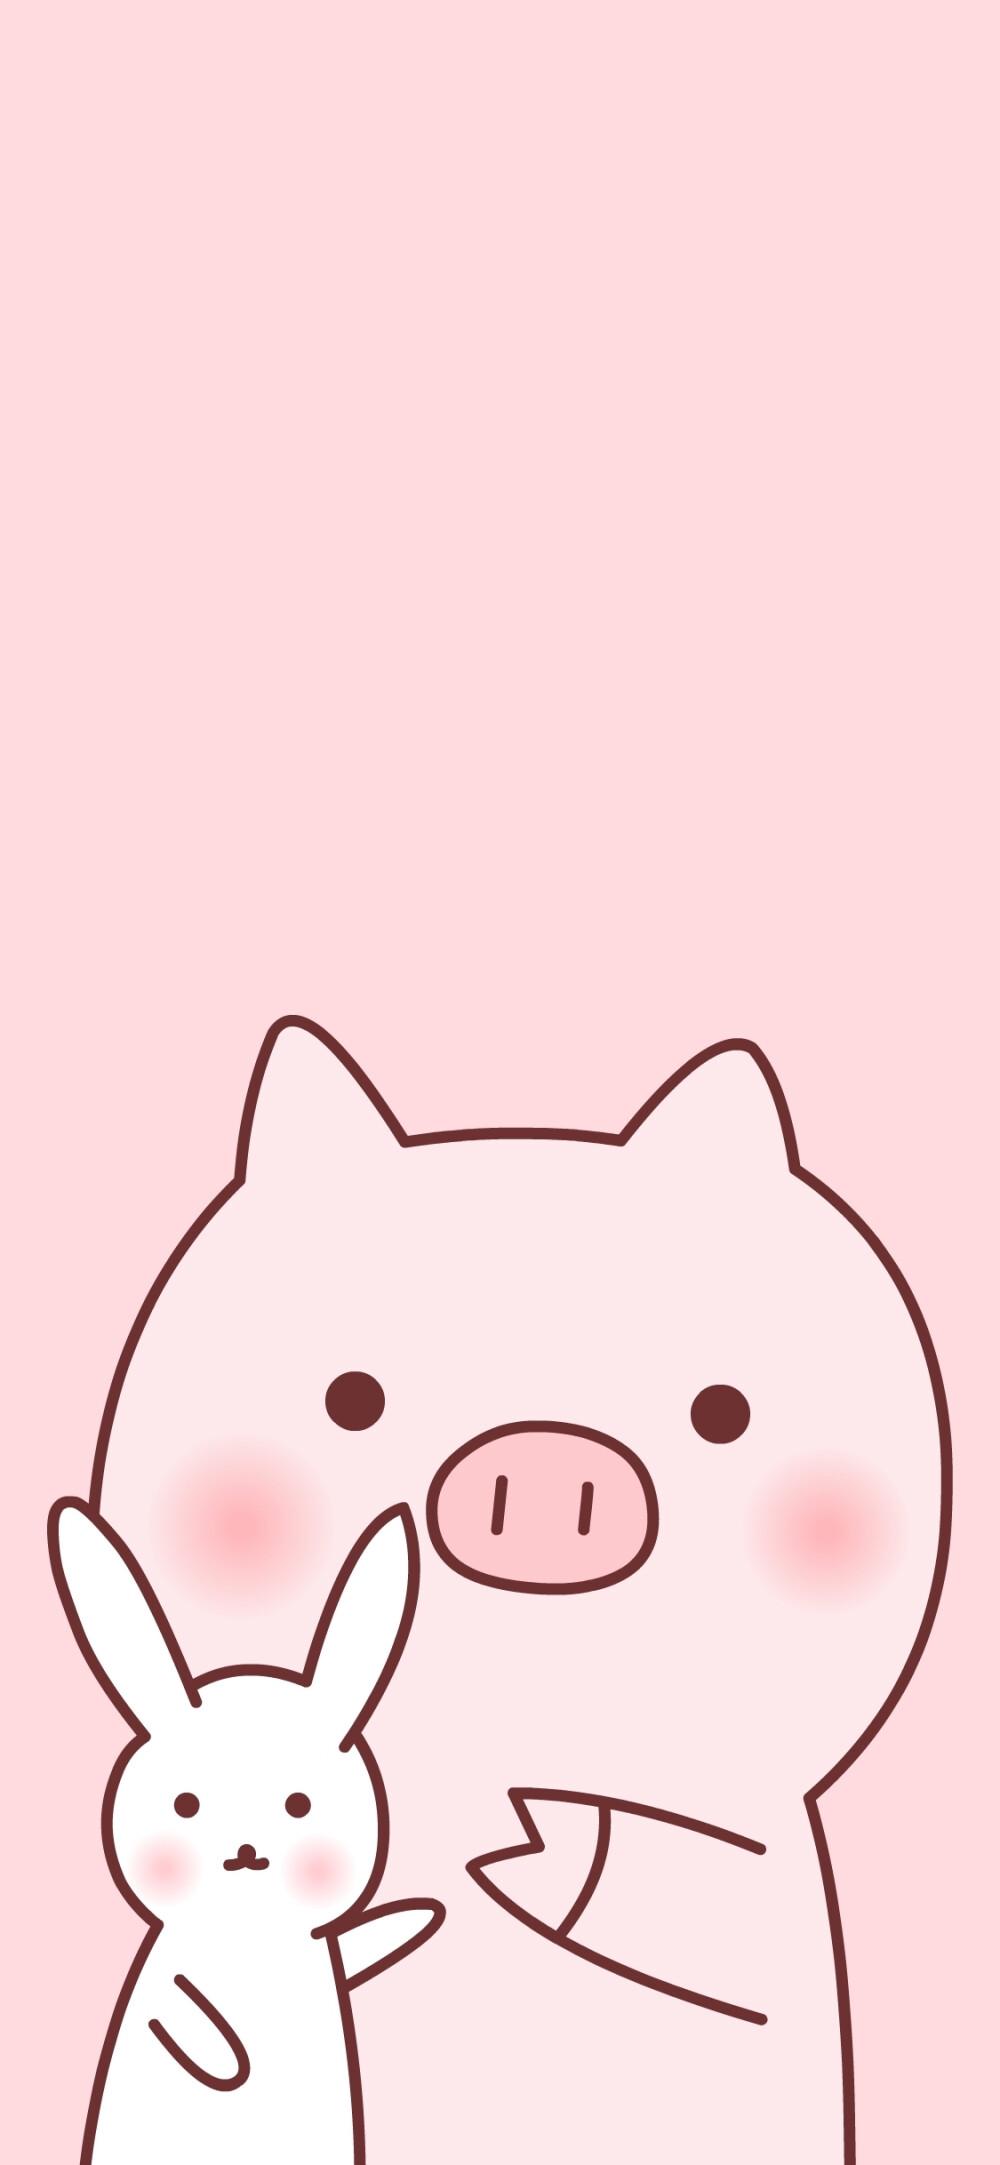 可爱猪猪手机壁纸图片